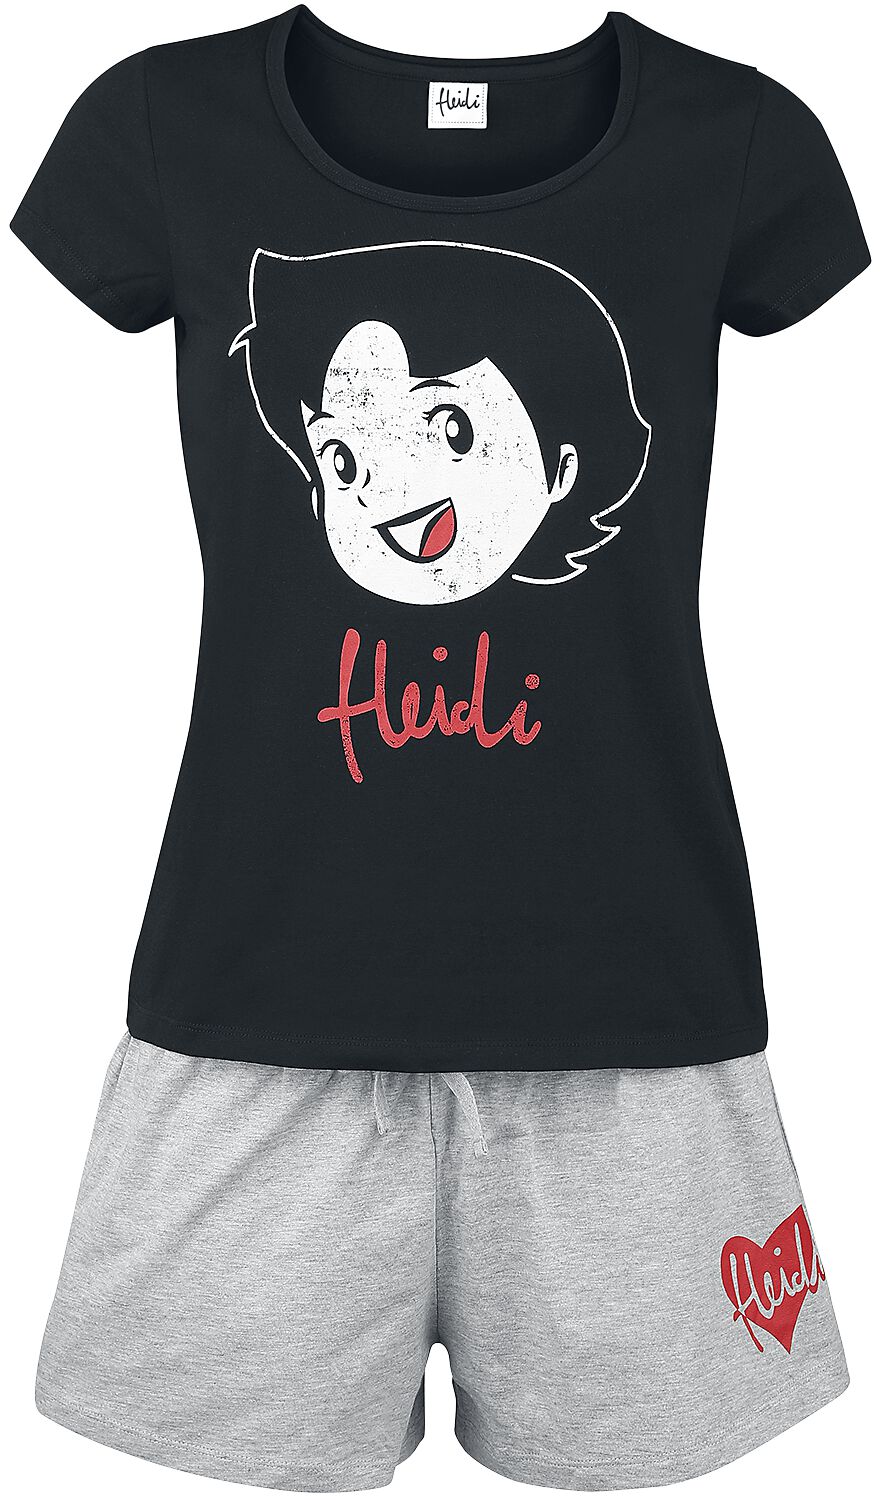 Pyjama de Heidi - S à 3XL - pour Femme - noir/gris